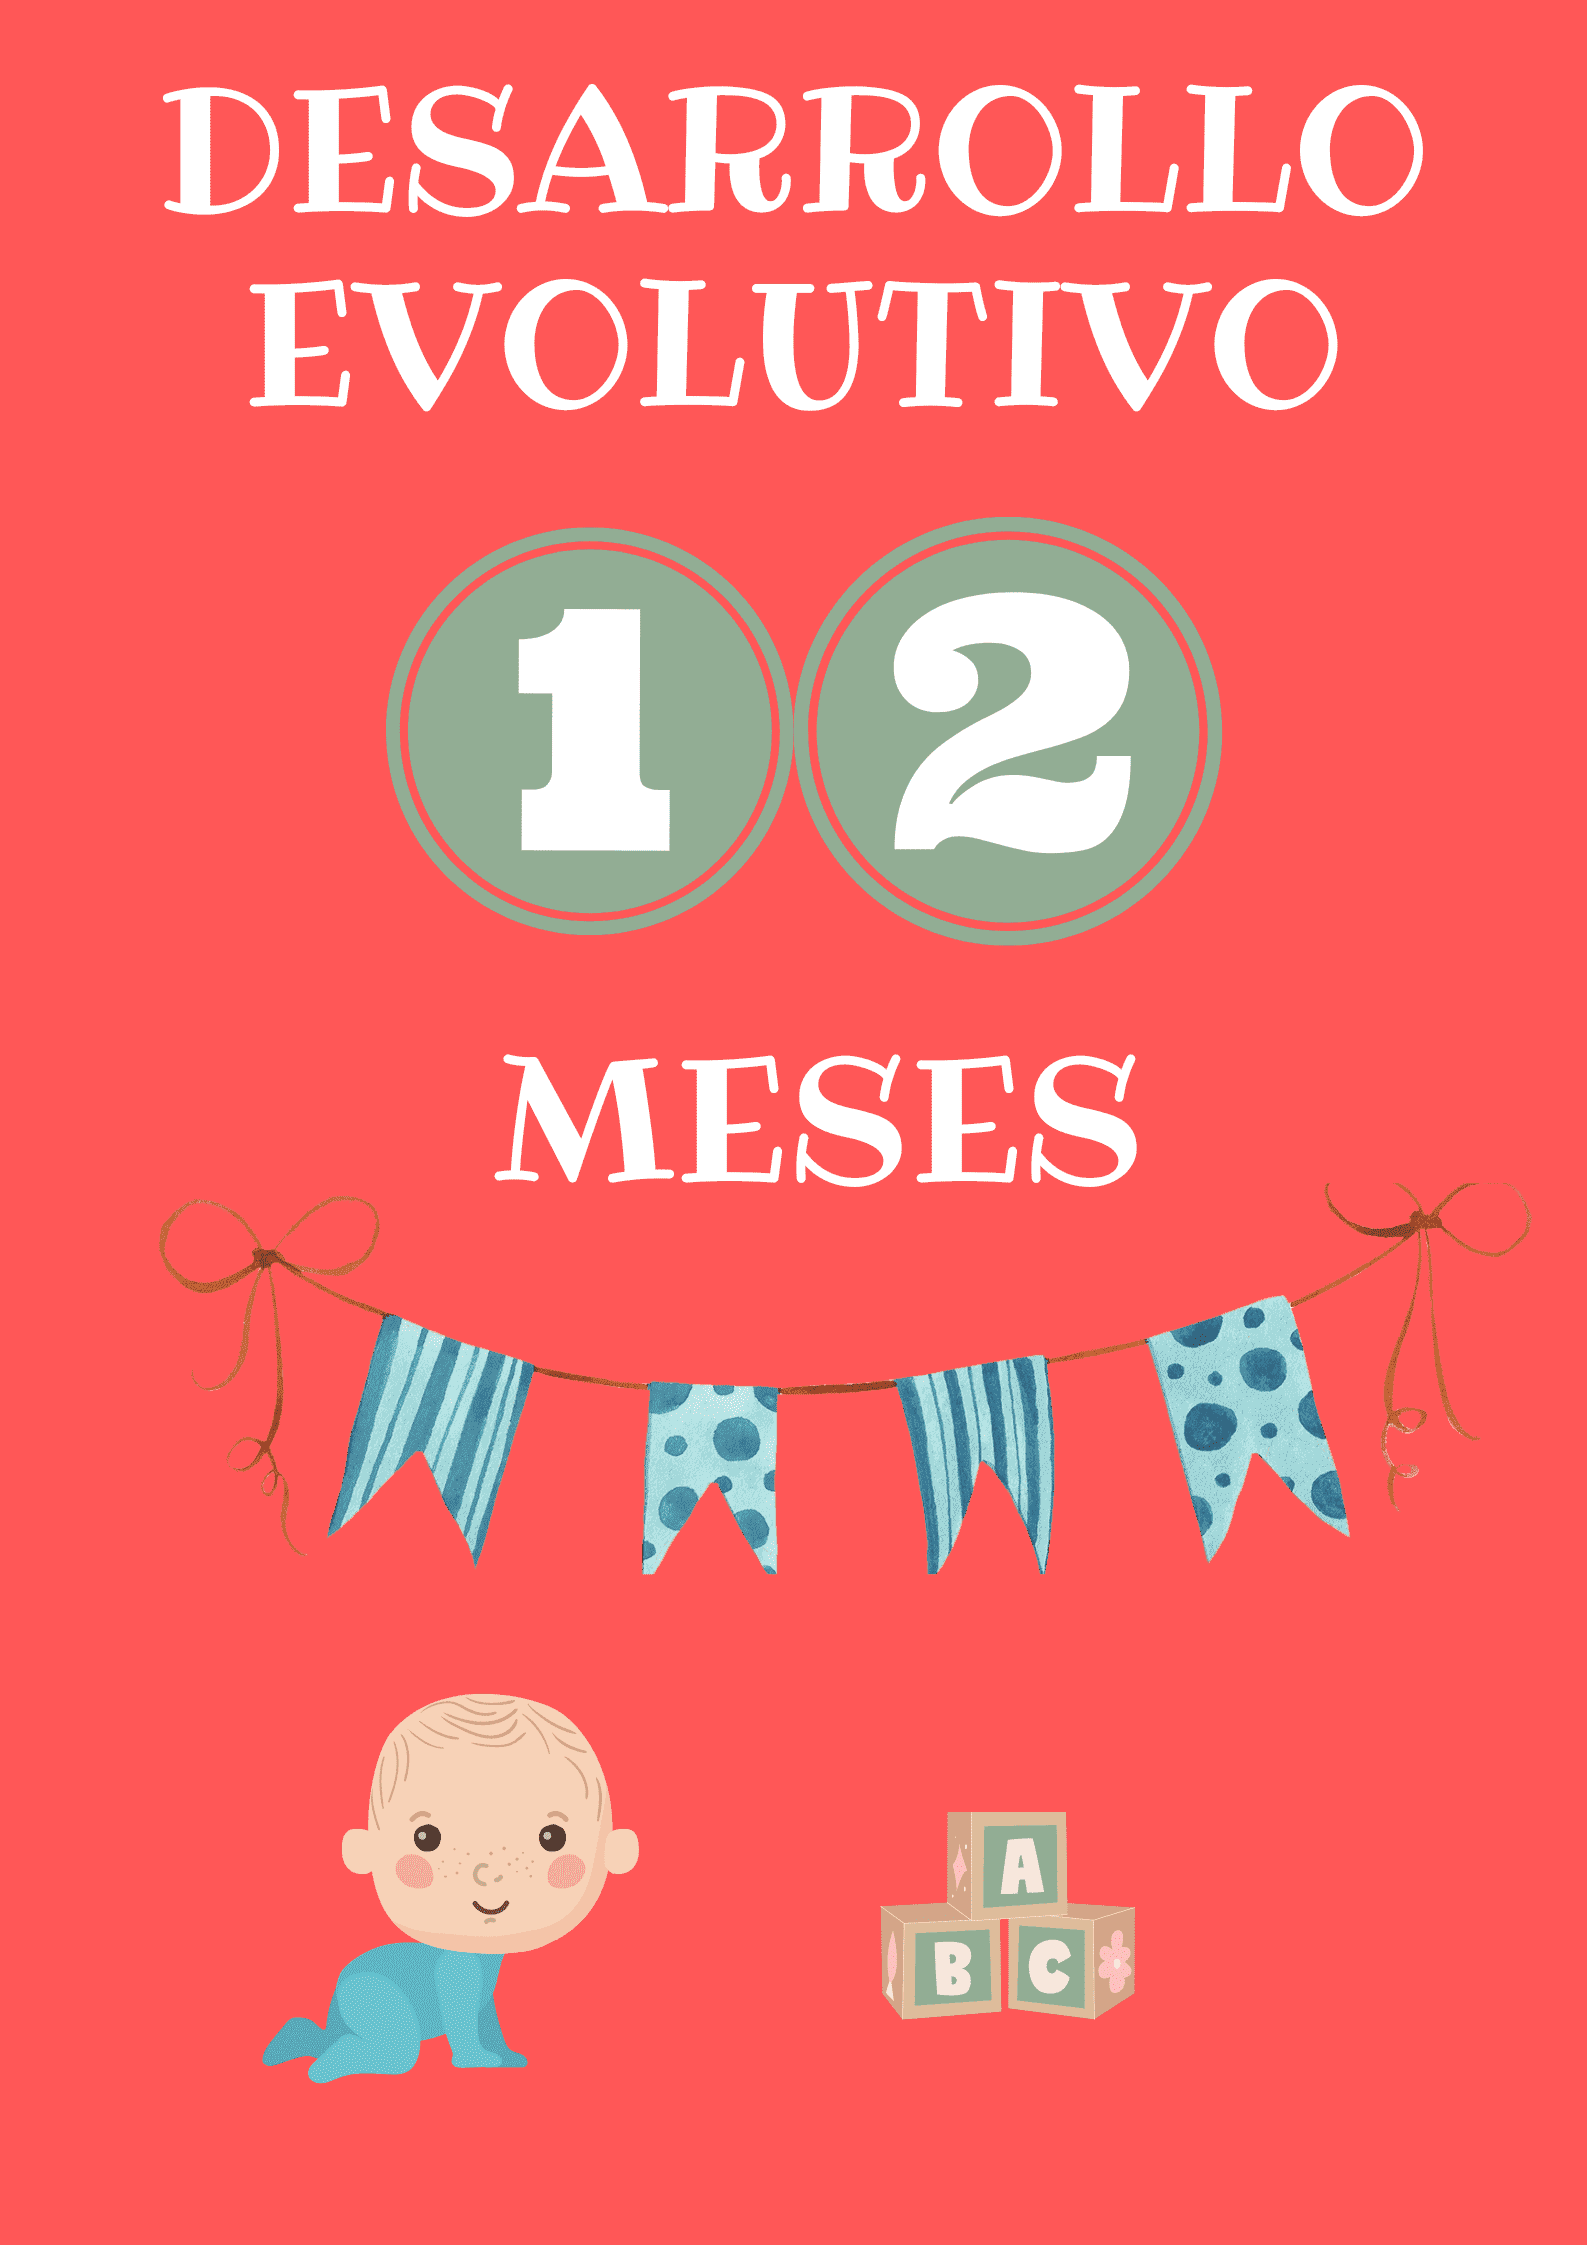 DESARROLLO EVOLUTIVO 12 MESES (1).png